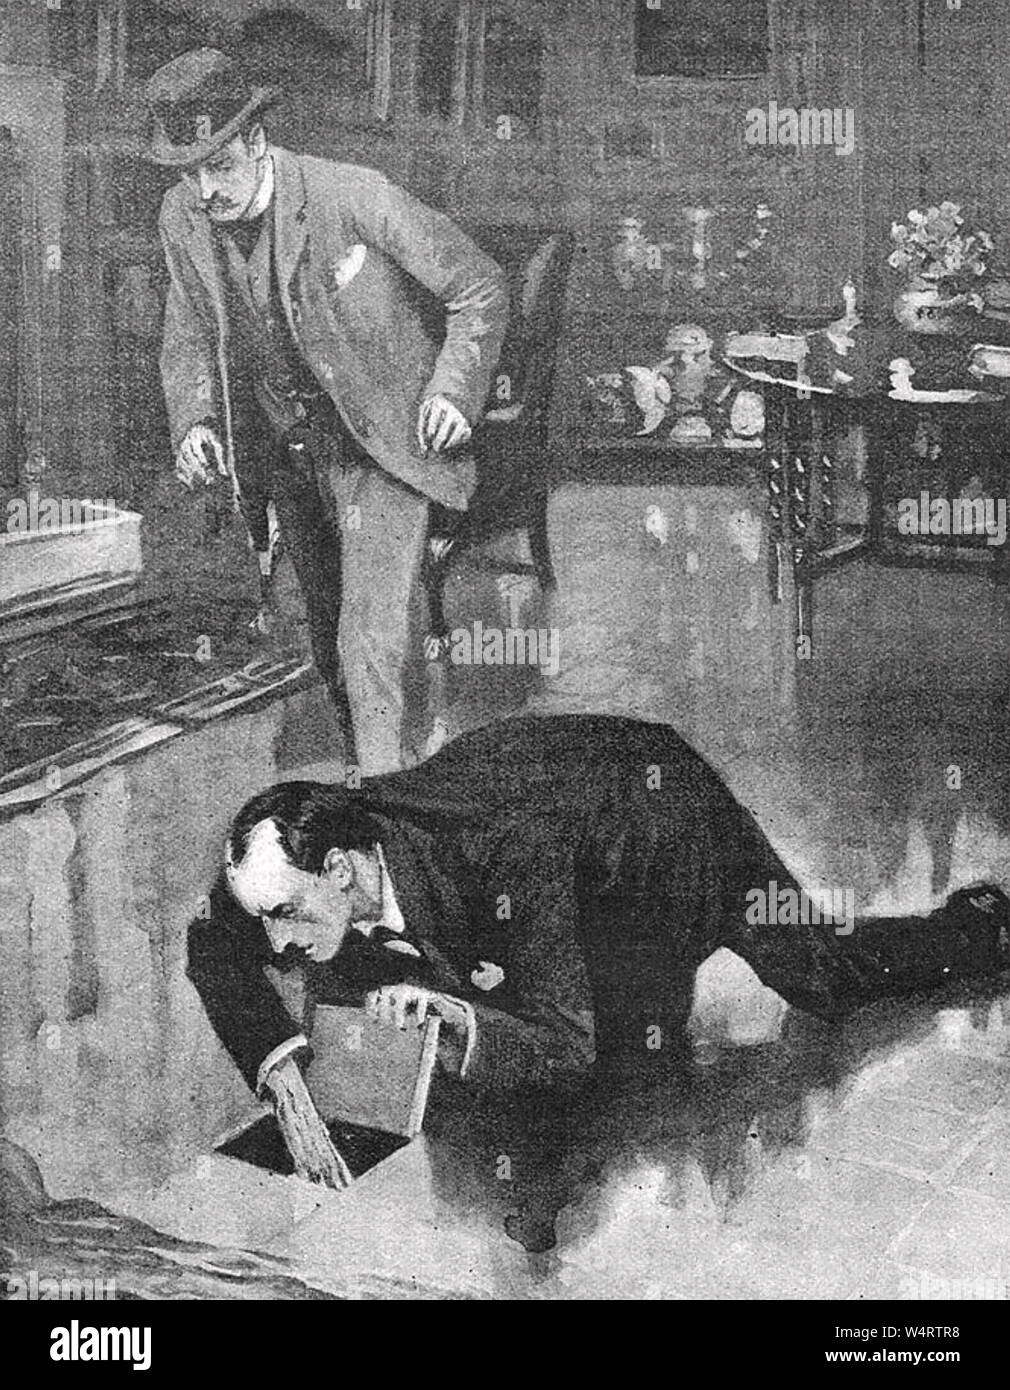 SHERLOCK HOLMES: DIE ABENTEUER DES ZWEITEN FLECK von Arthur Conan Doyle im Jahr 1904 veröffentlicht. Stockfoto